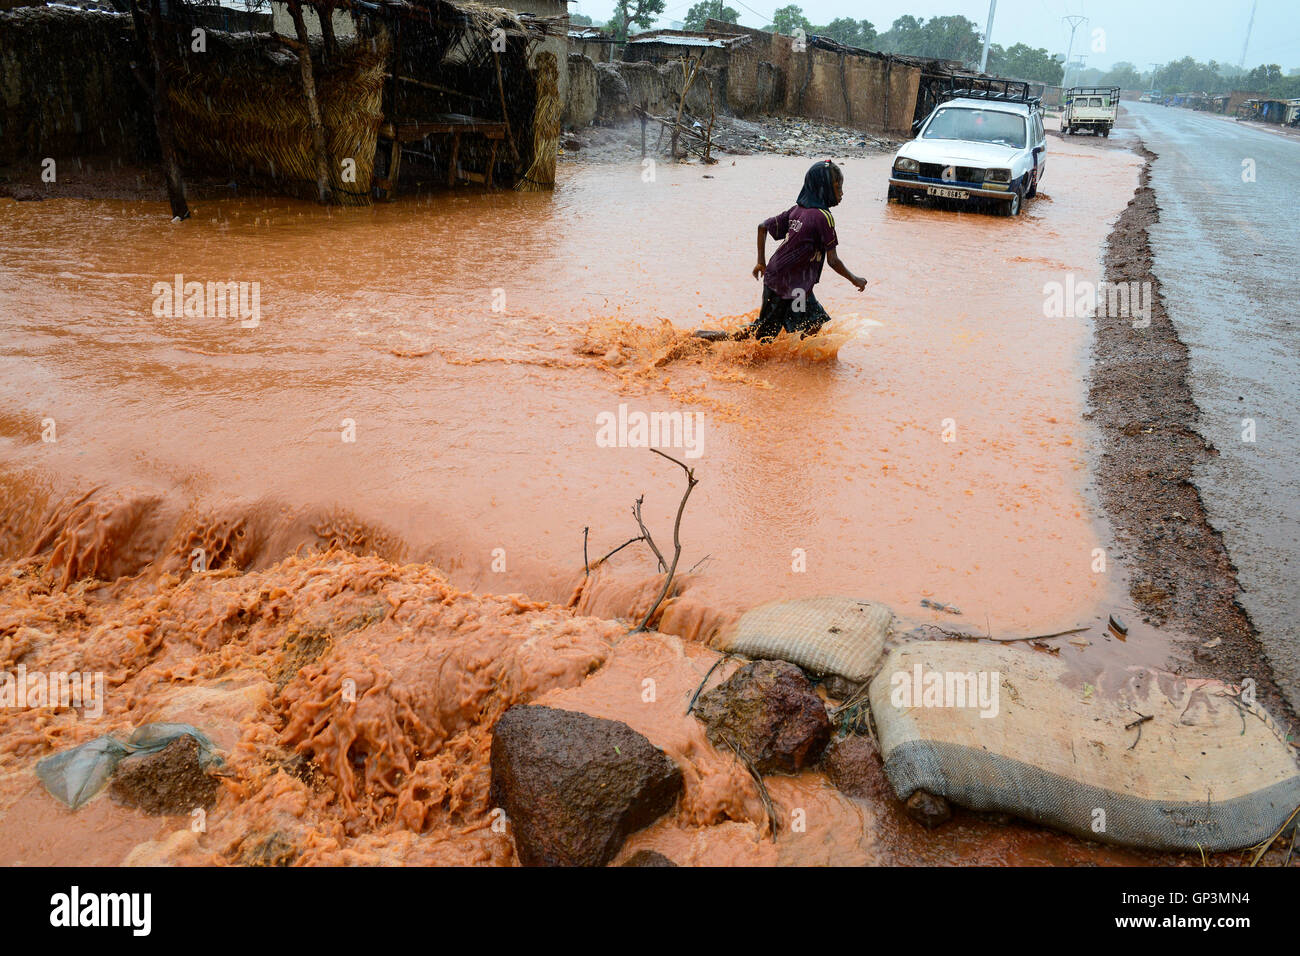 BURKINA FASO, Bobo Dioulasso, raining season, flooded village / Regenzeit, Ueberschwemmung in einem Dorf Stock Photo